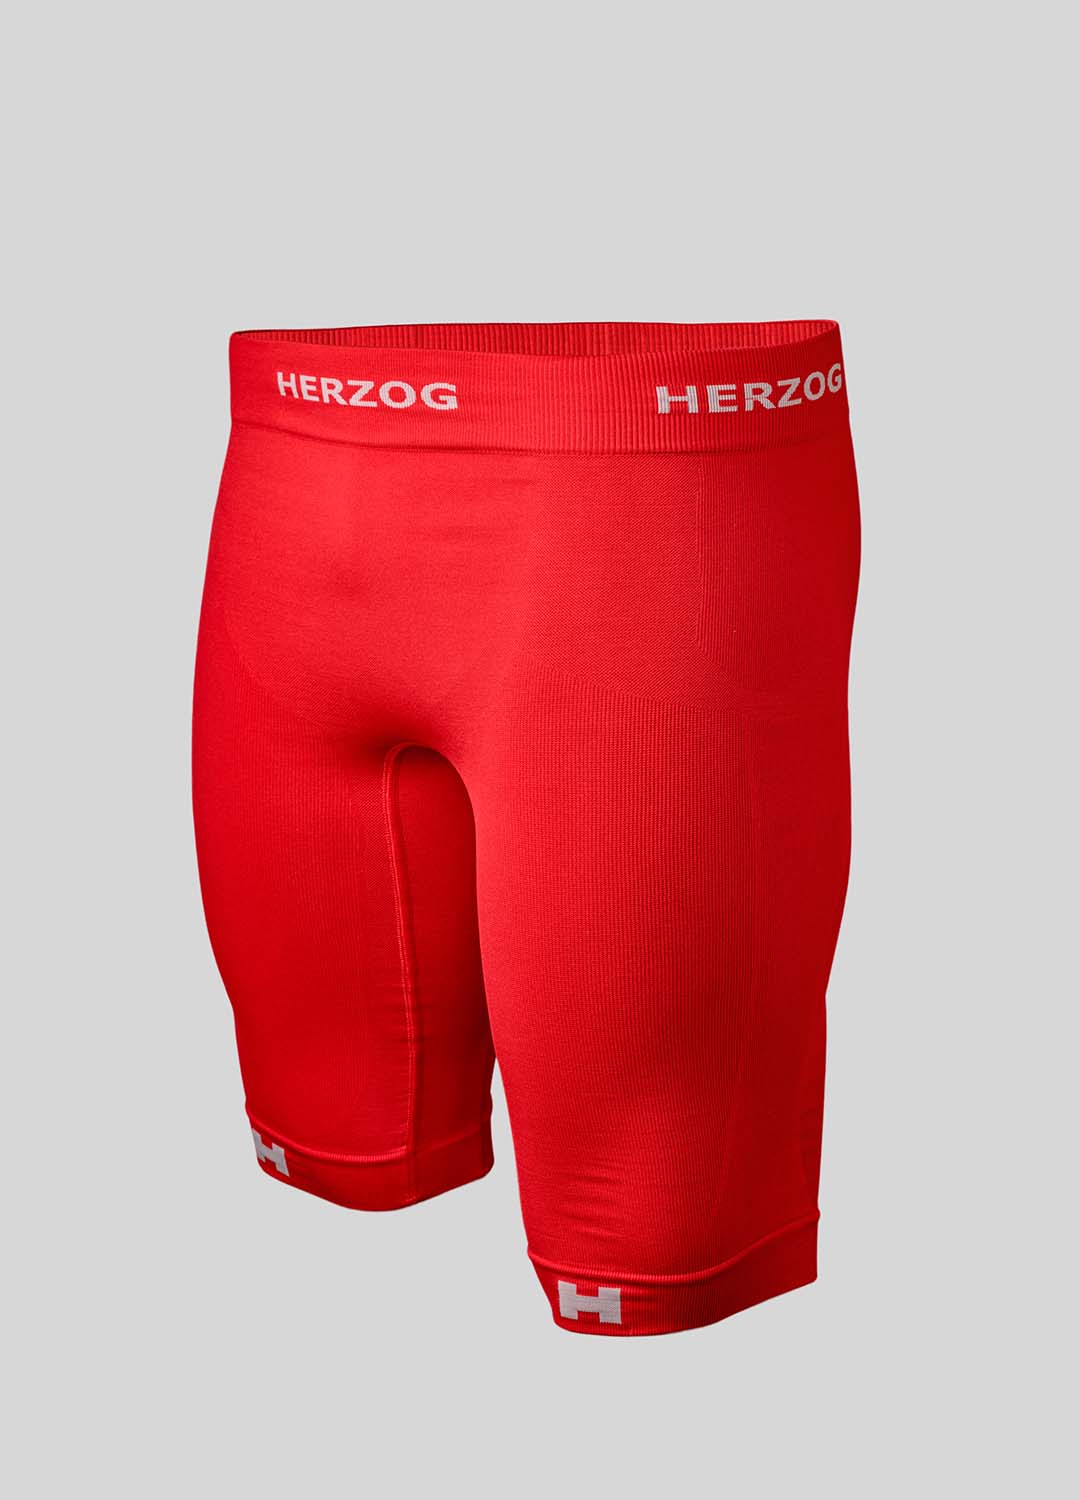 Shop your red Herzog PRO Sport Compression Shorts | Herzog